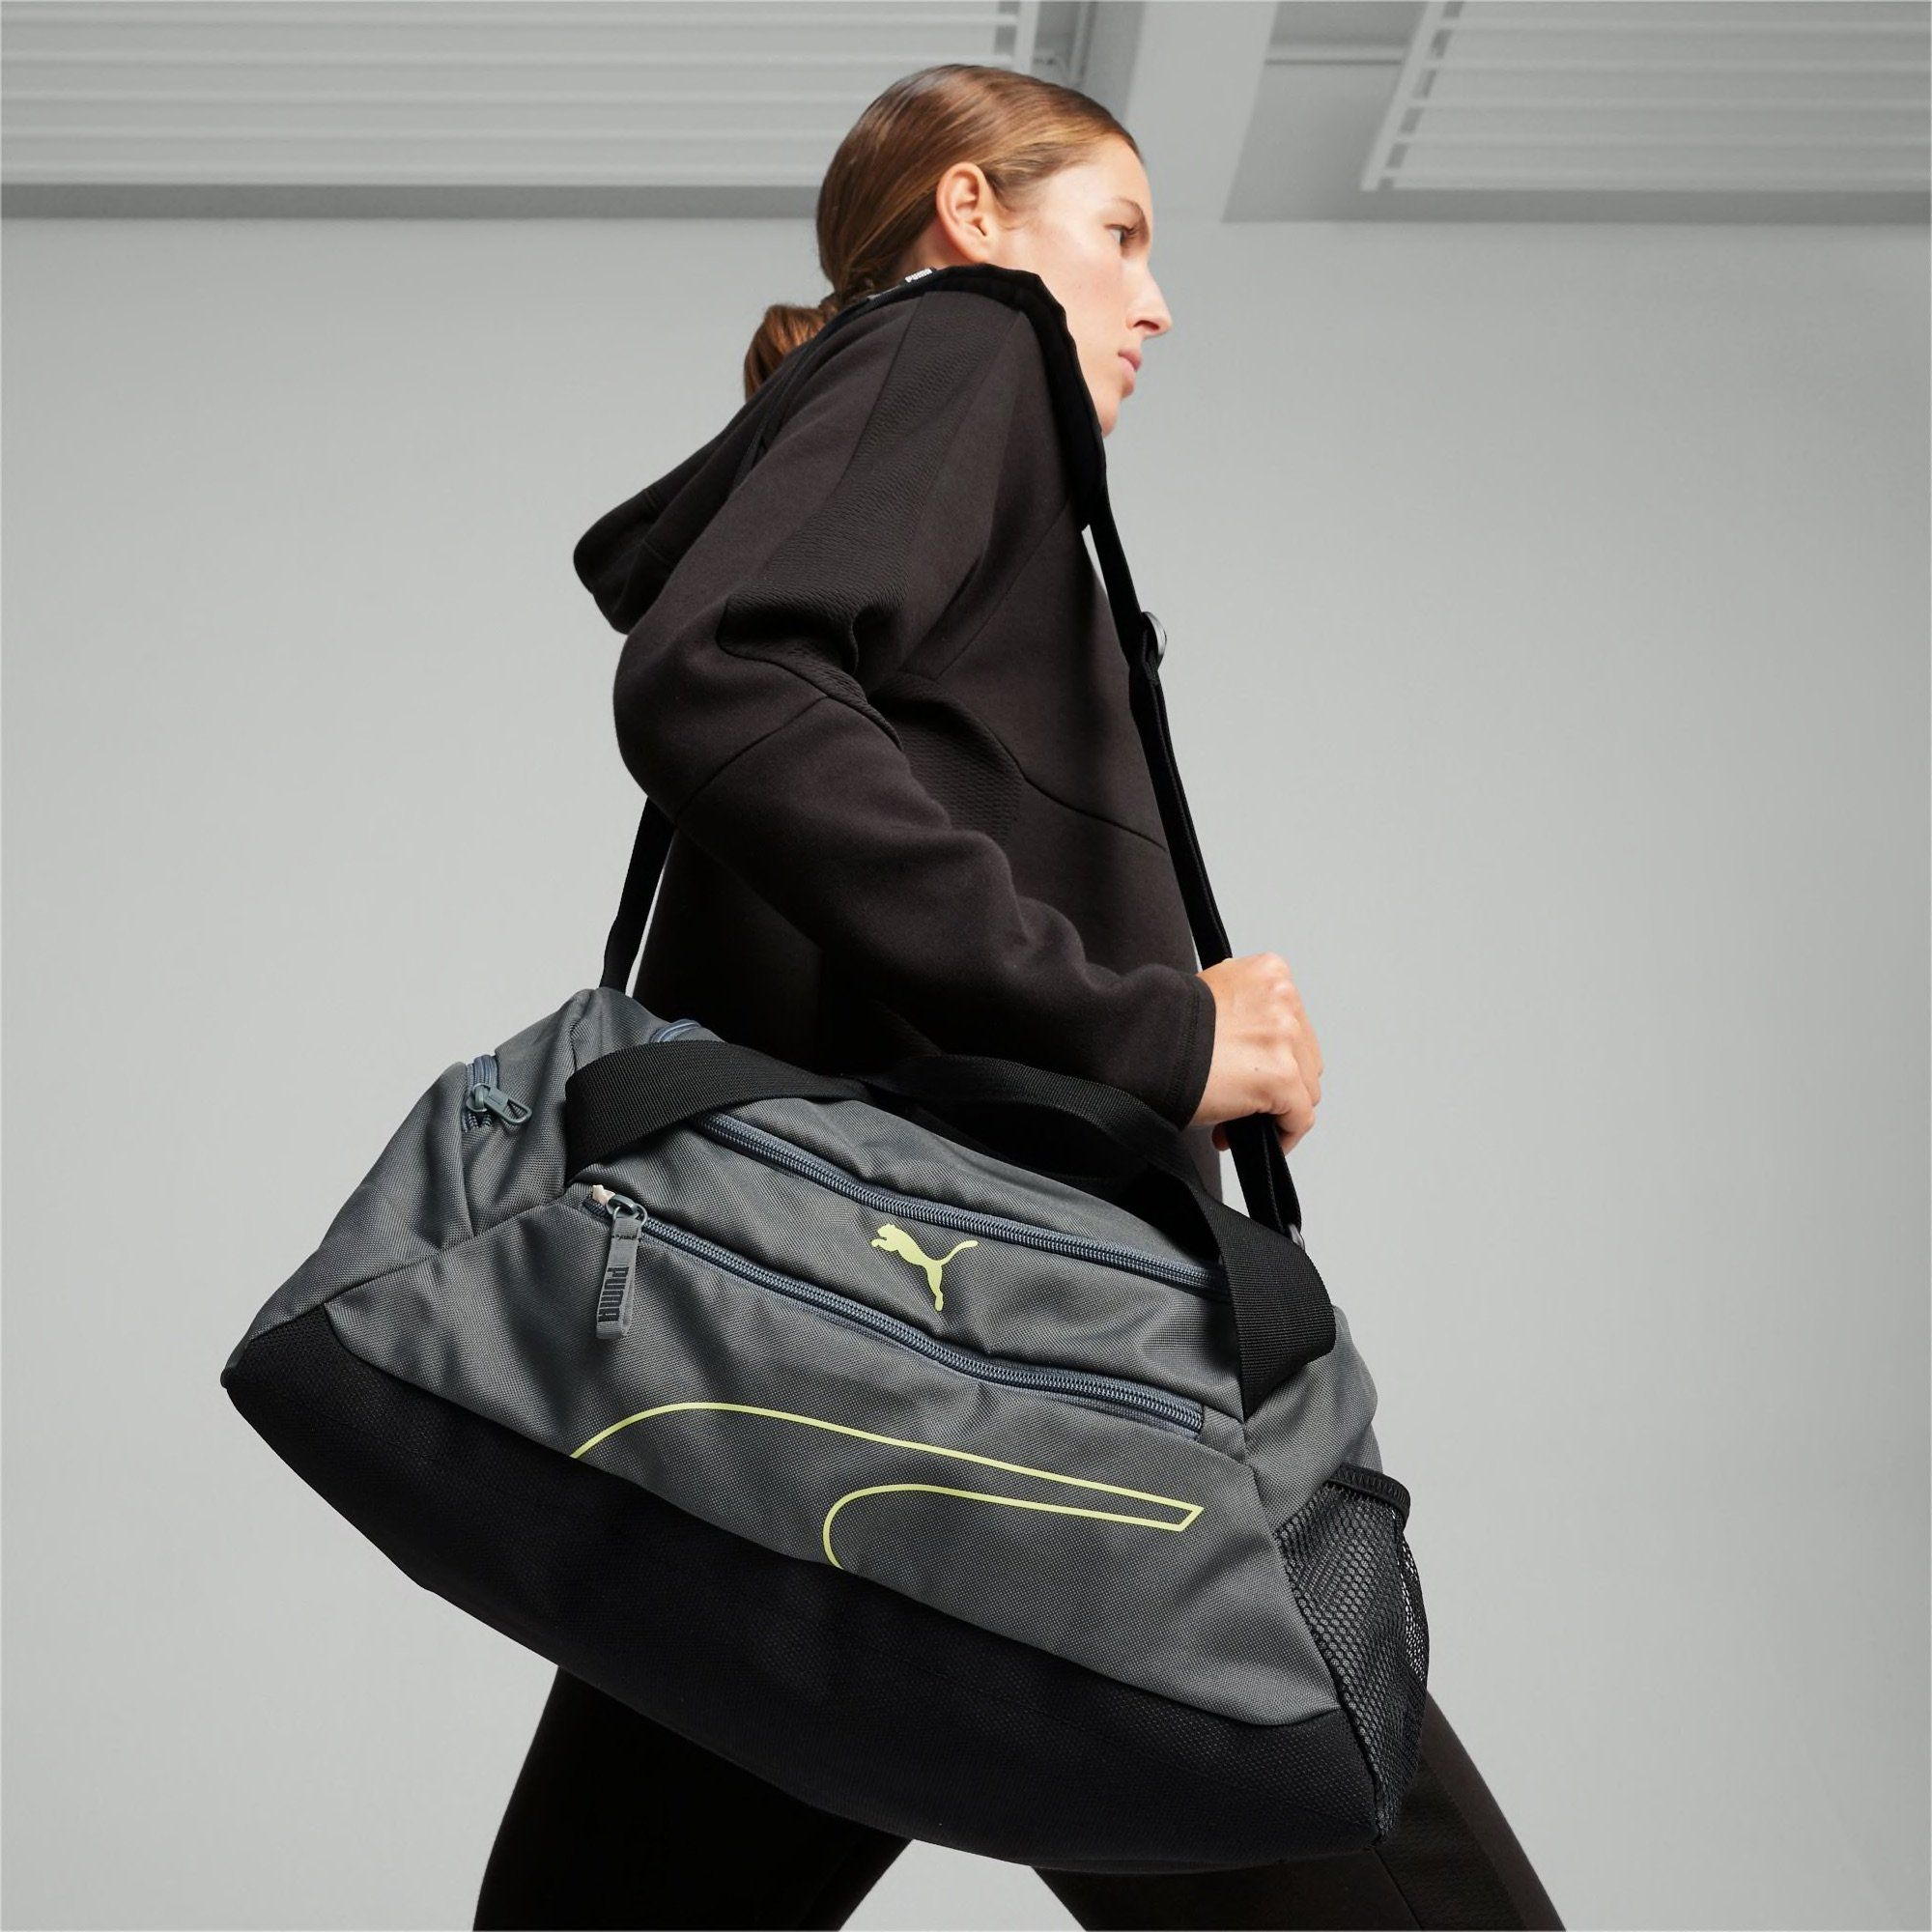  Puma Fundamentals Small Sports Bag - Grey 